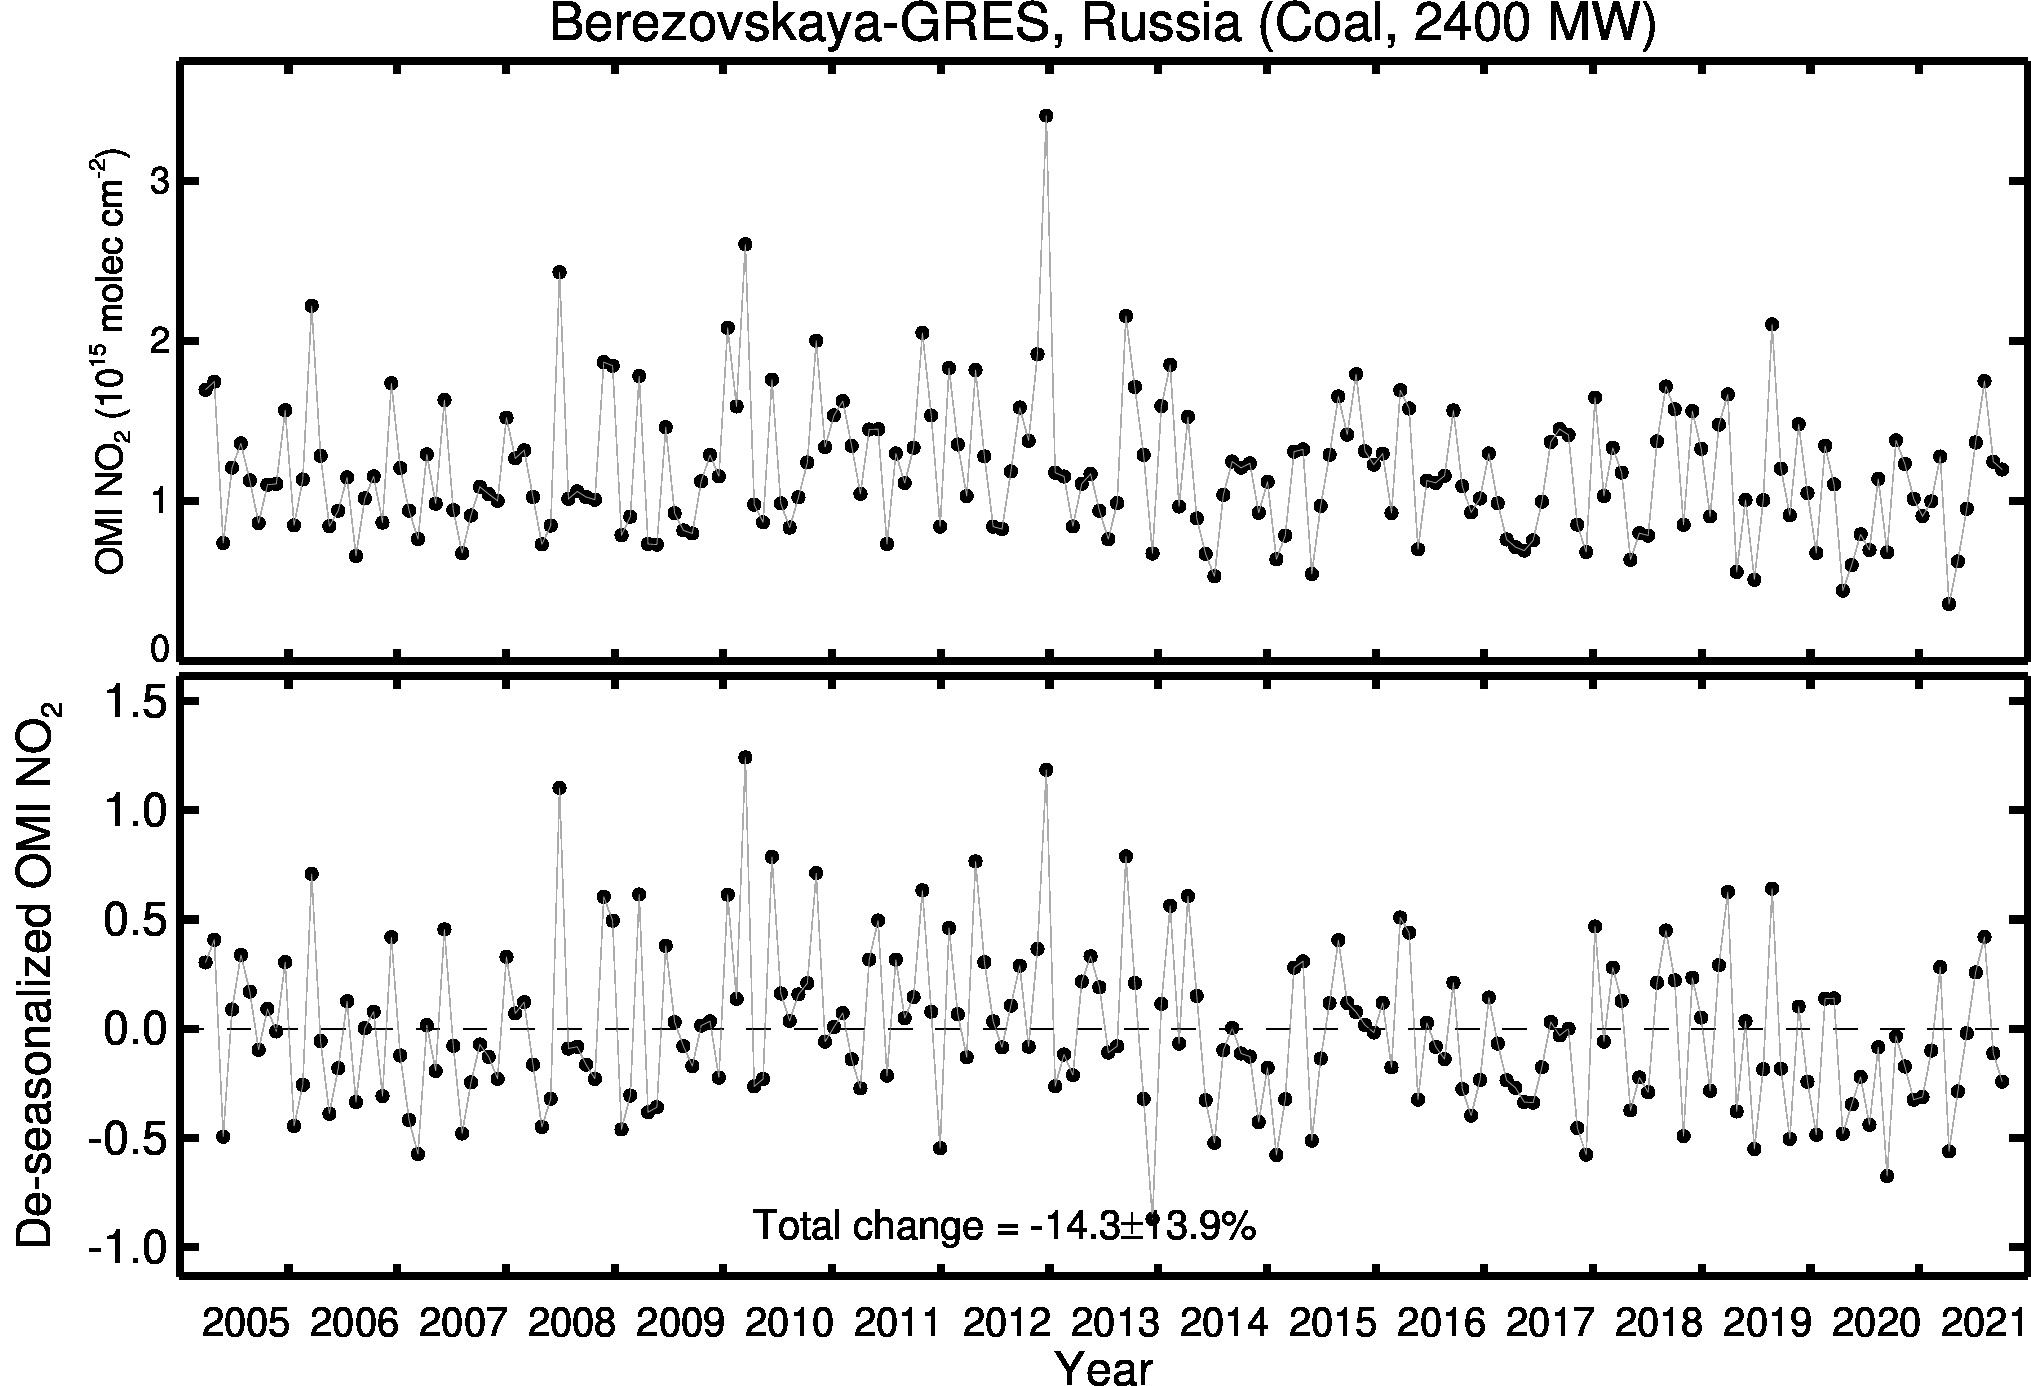 Berezovskaya GRES Line Plot 2005-2021